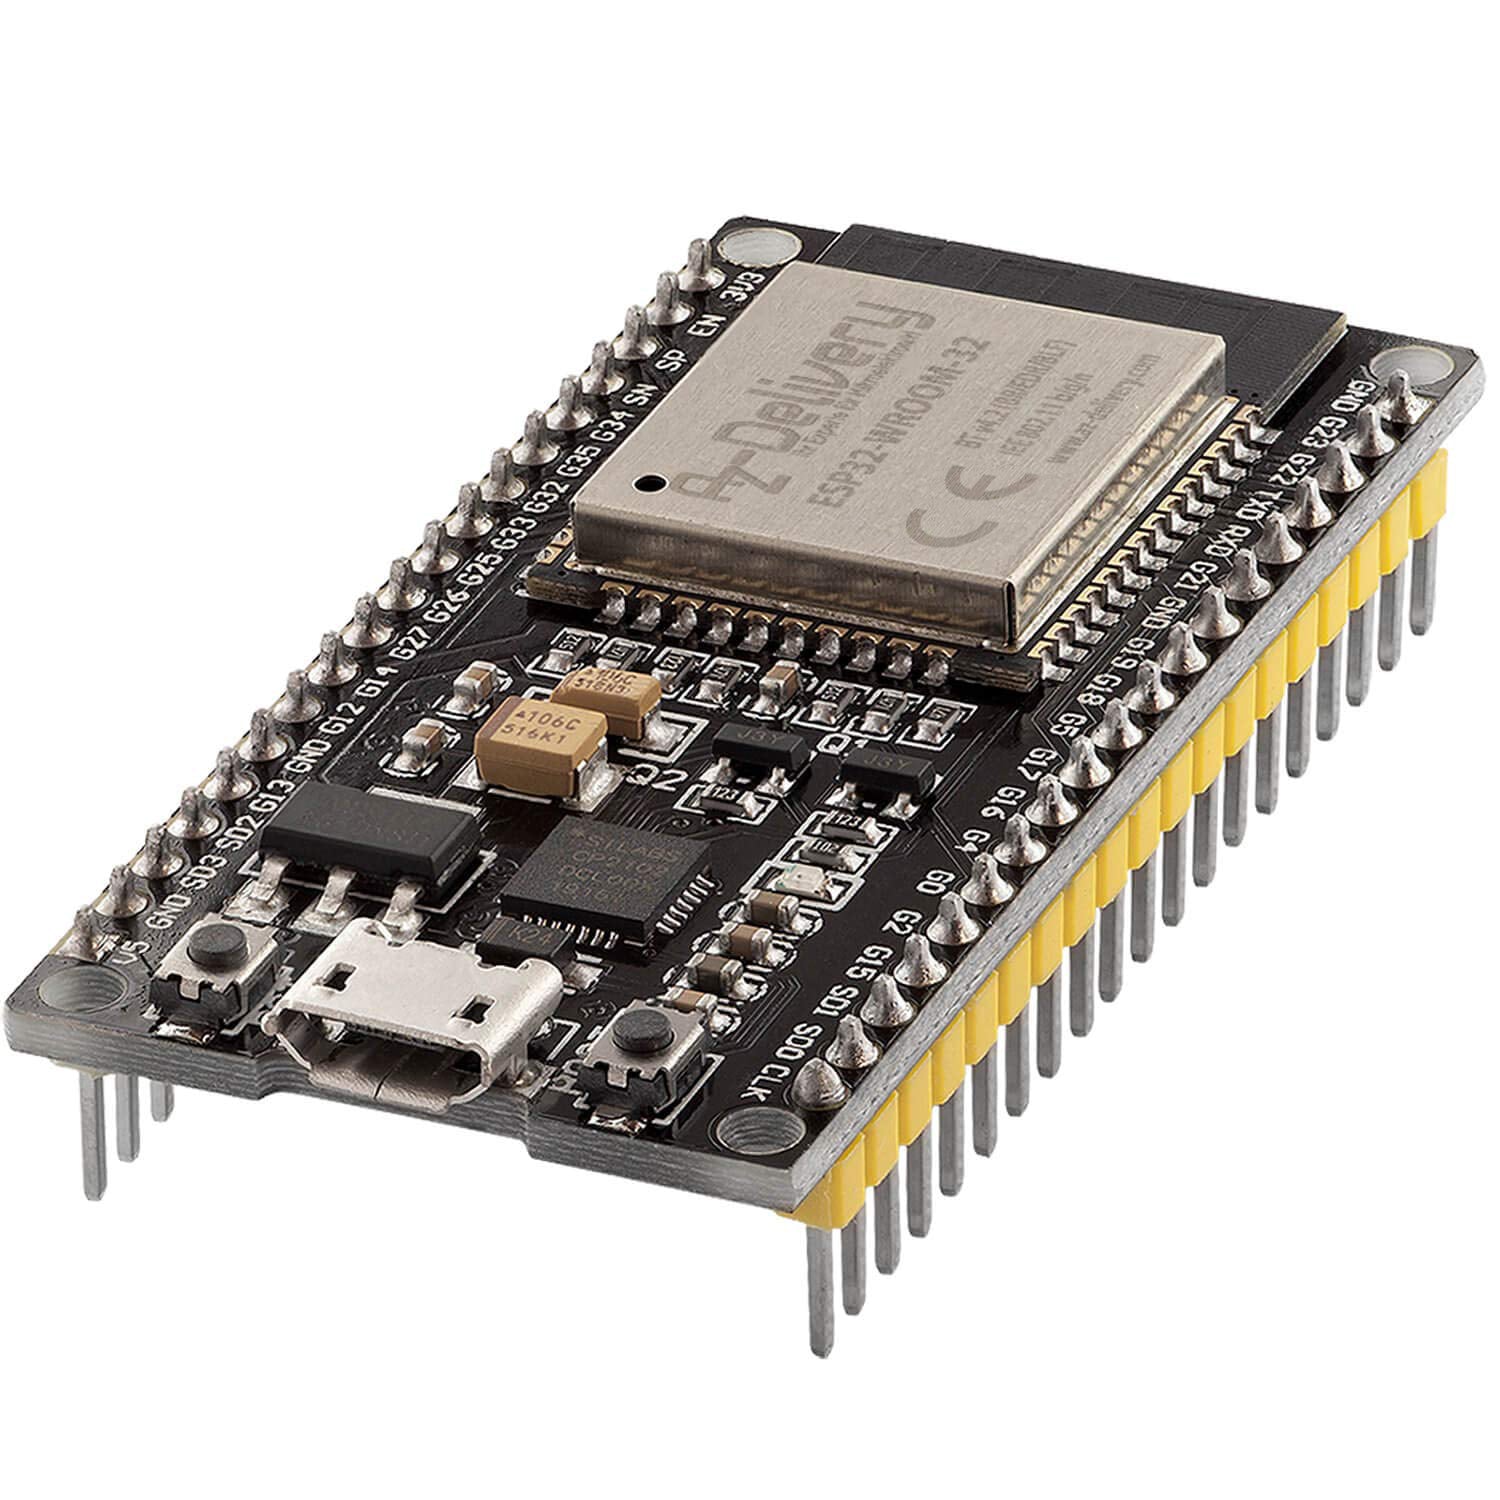 ESP32 NodeMCU Module WLAN WiFi Development Board mit CP2102 (Nachfolgermodell zum ESP8266) kompatibel mit Arduino - AZ-Delivery